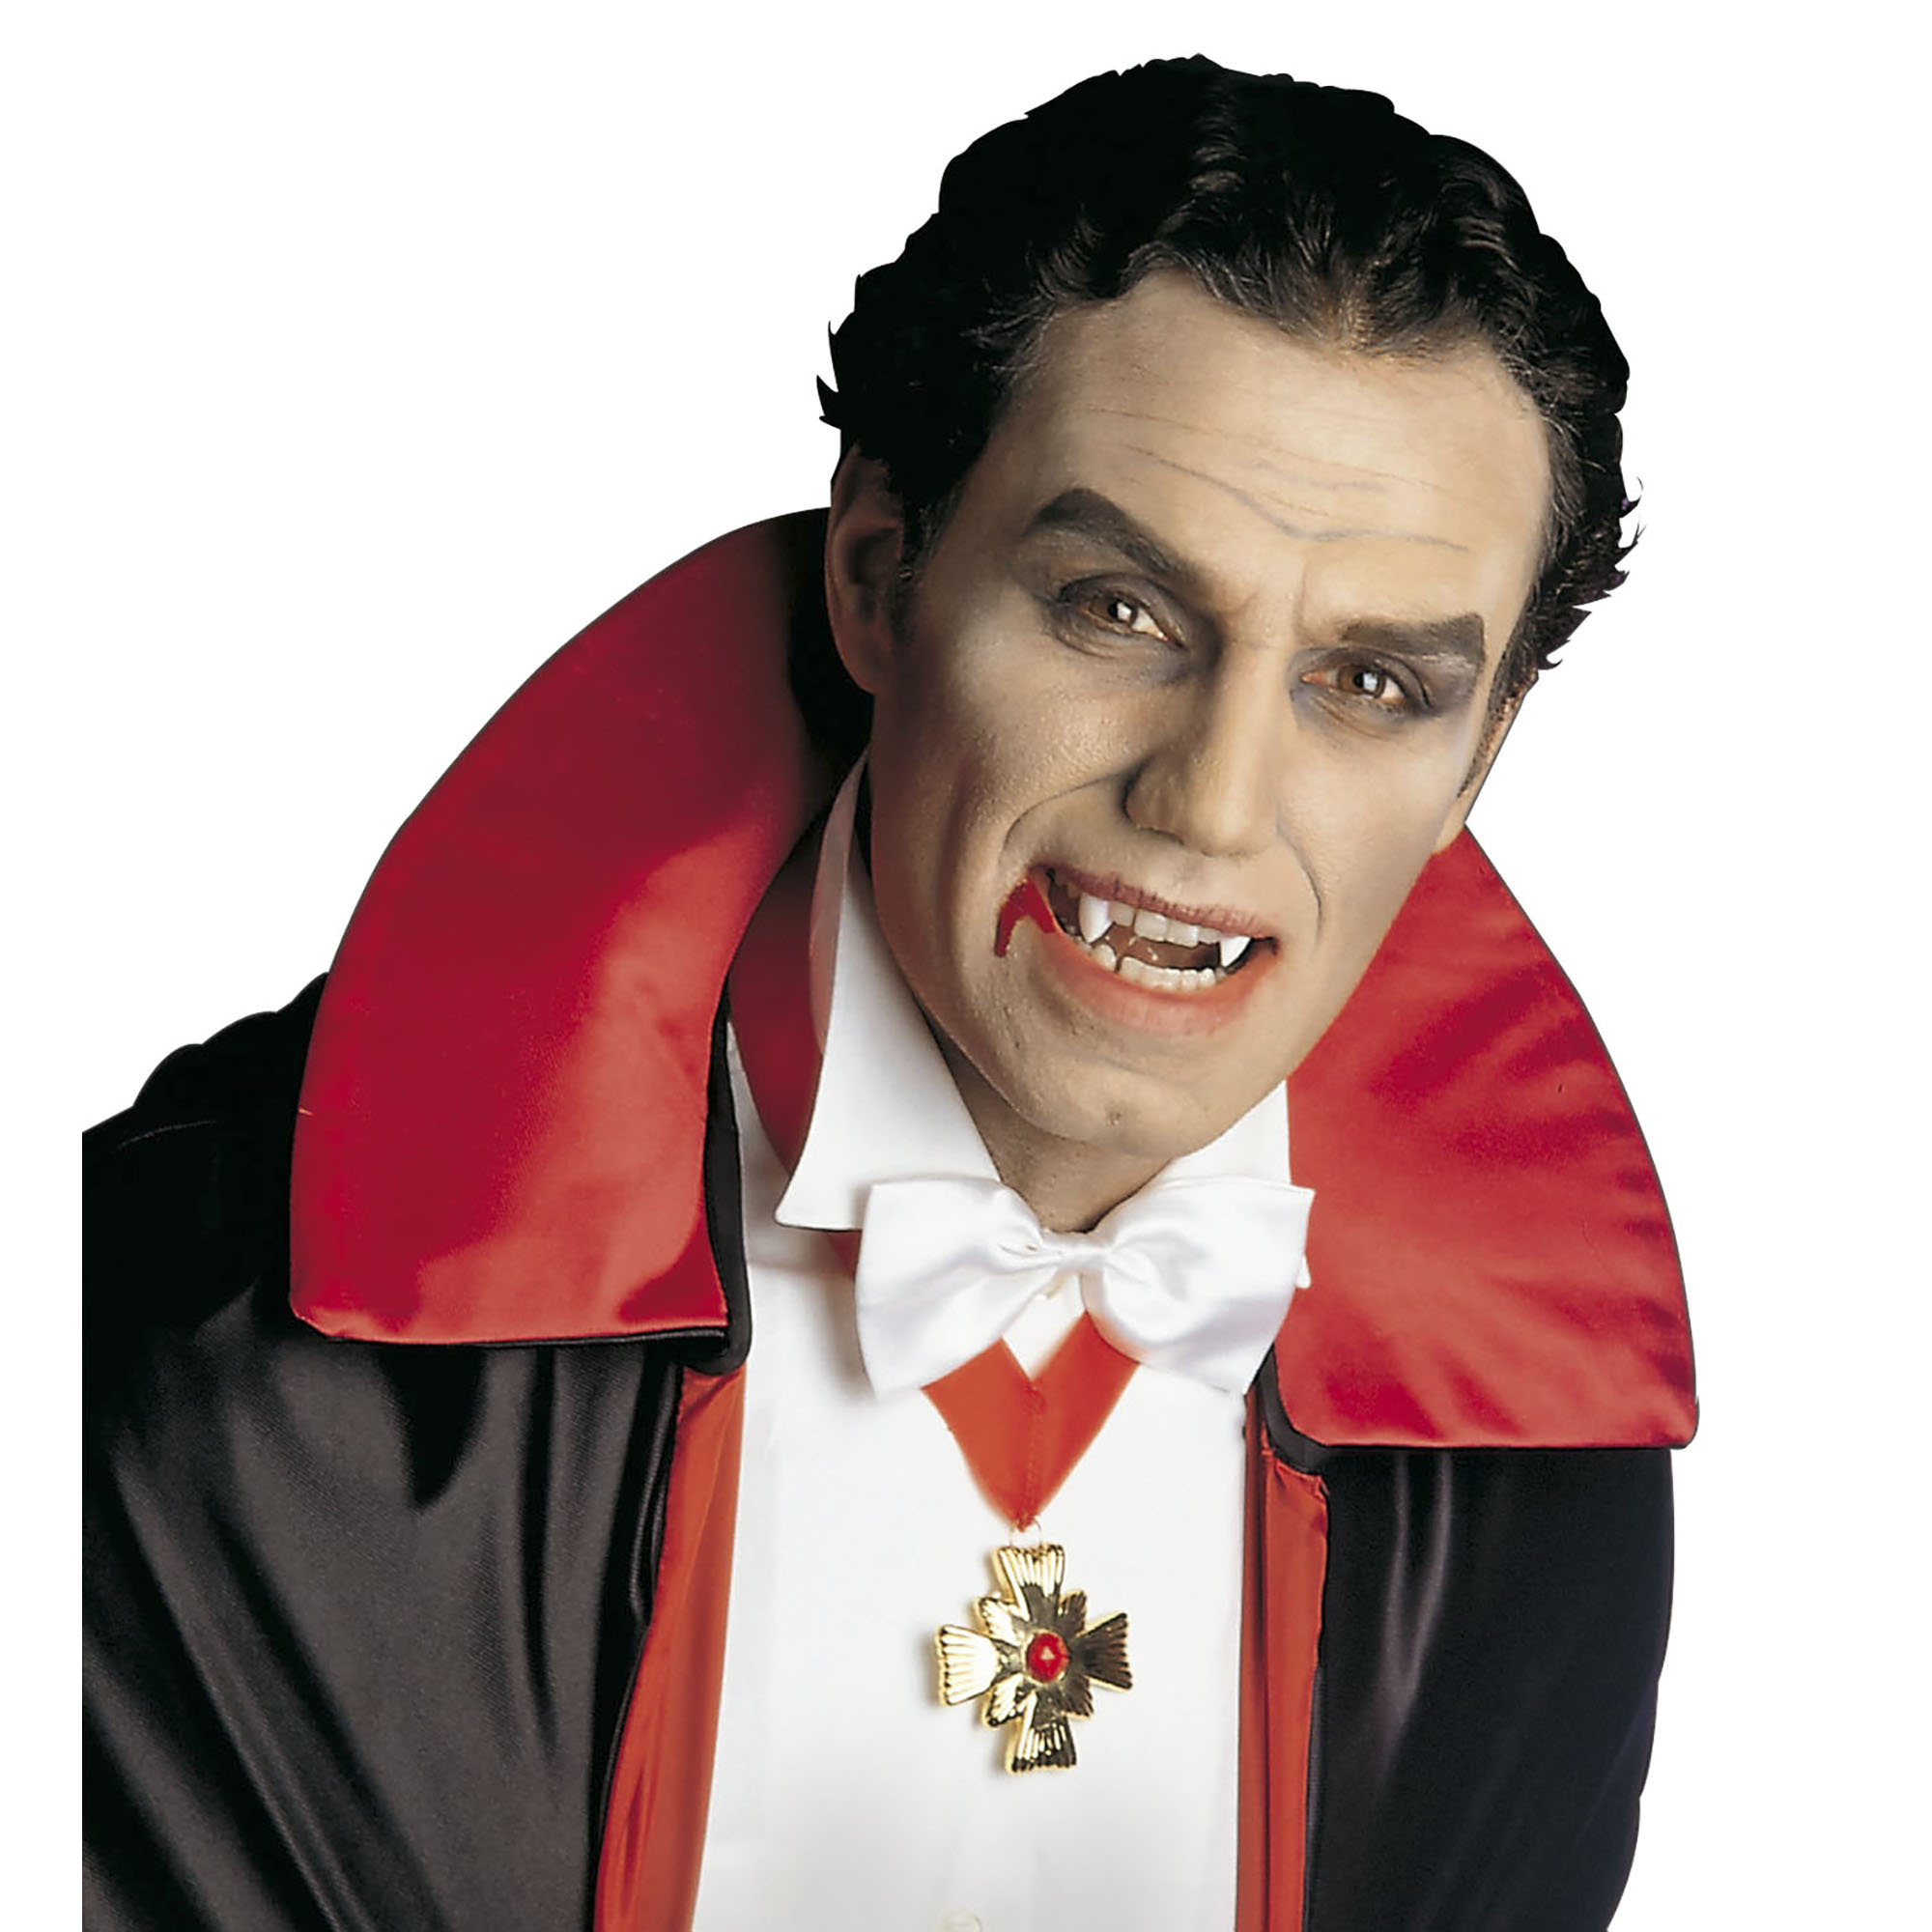 Carnavalsaccessoires: Vampier tanden voor Halloween